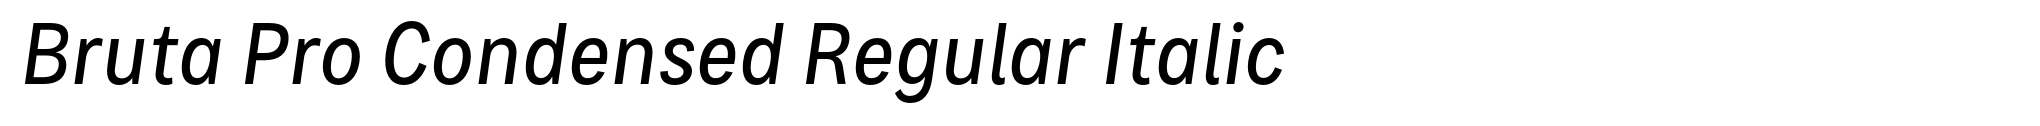 Bruta Pro Condensed Regular Italic image